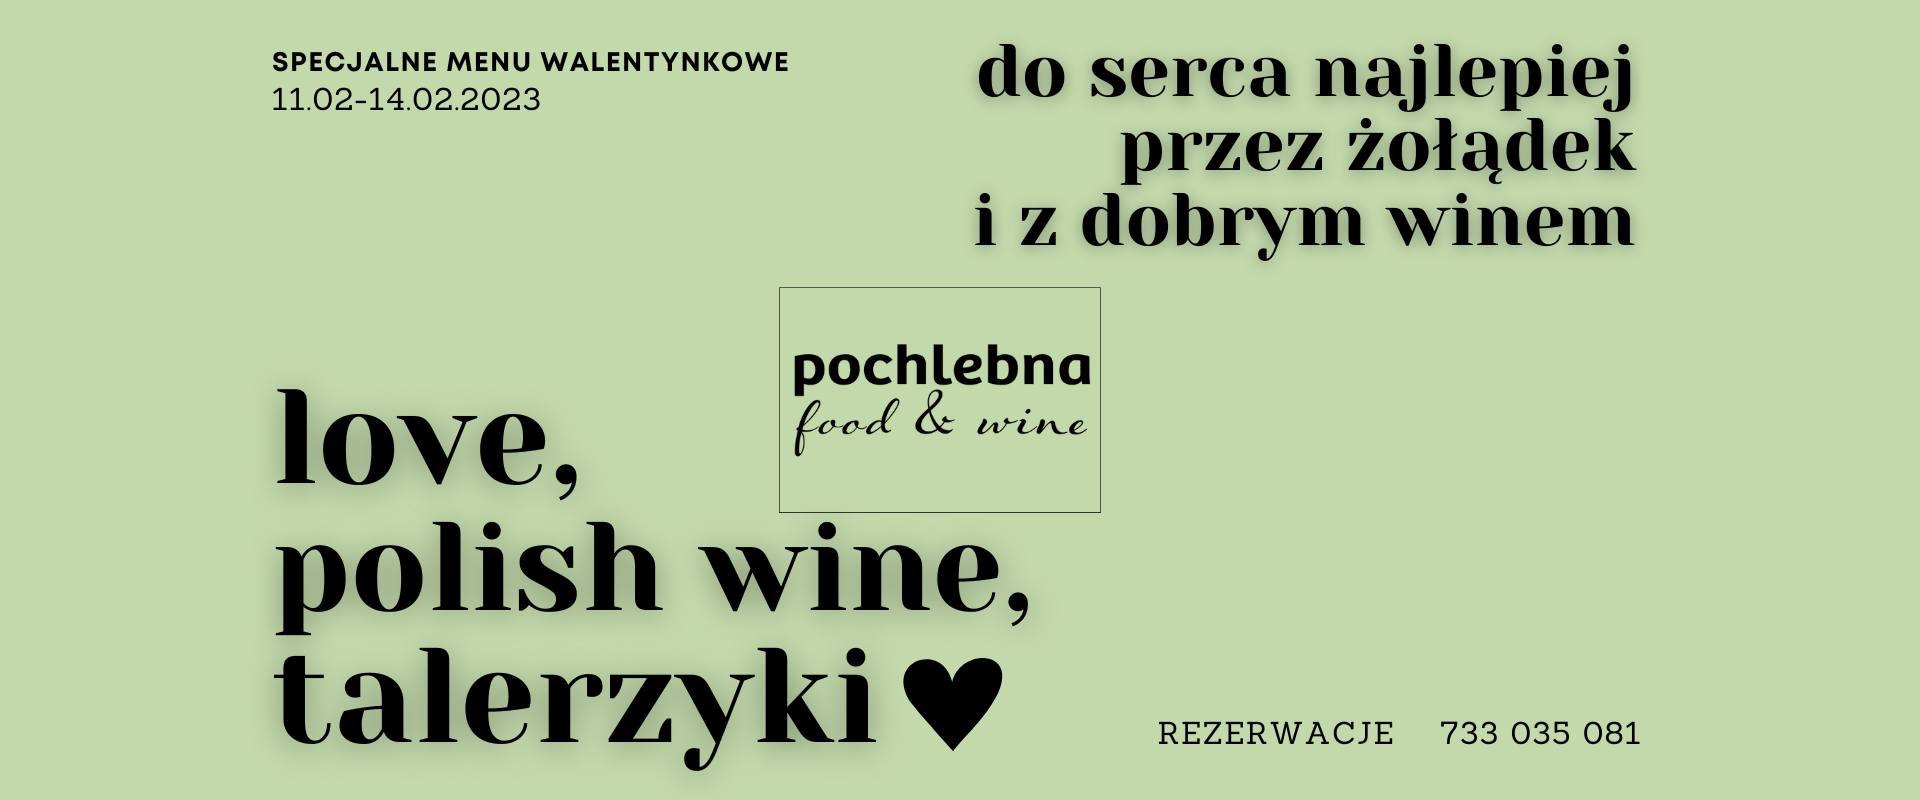 Spędź walentynki w dobrym towarzystwie i z polskim winem!